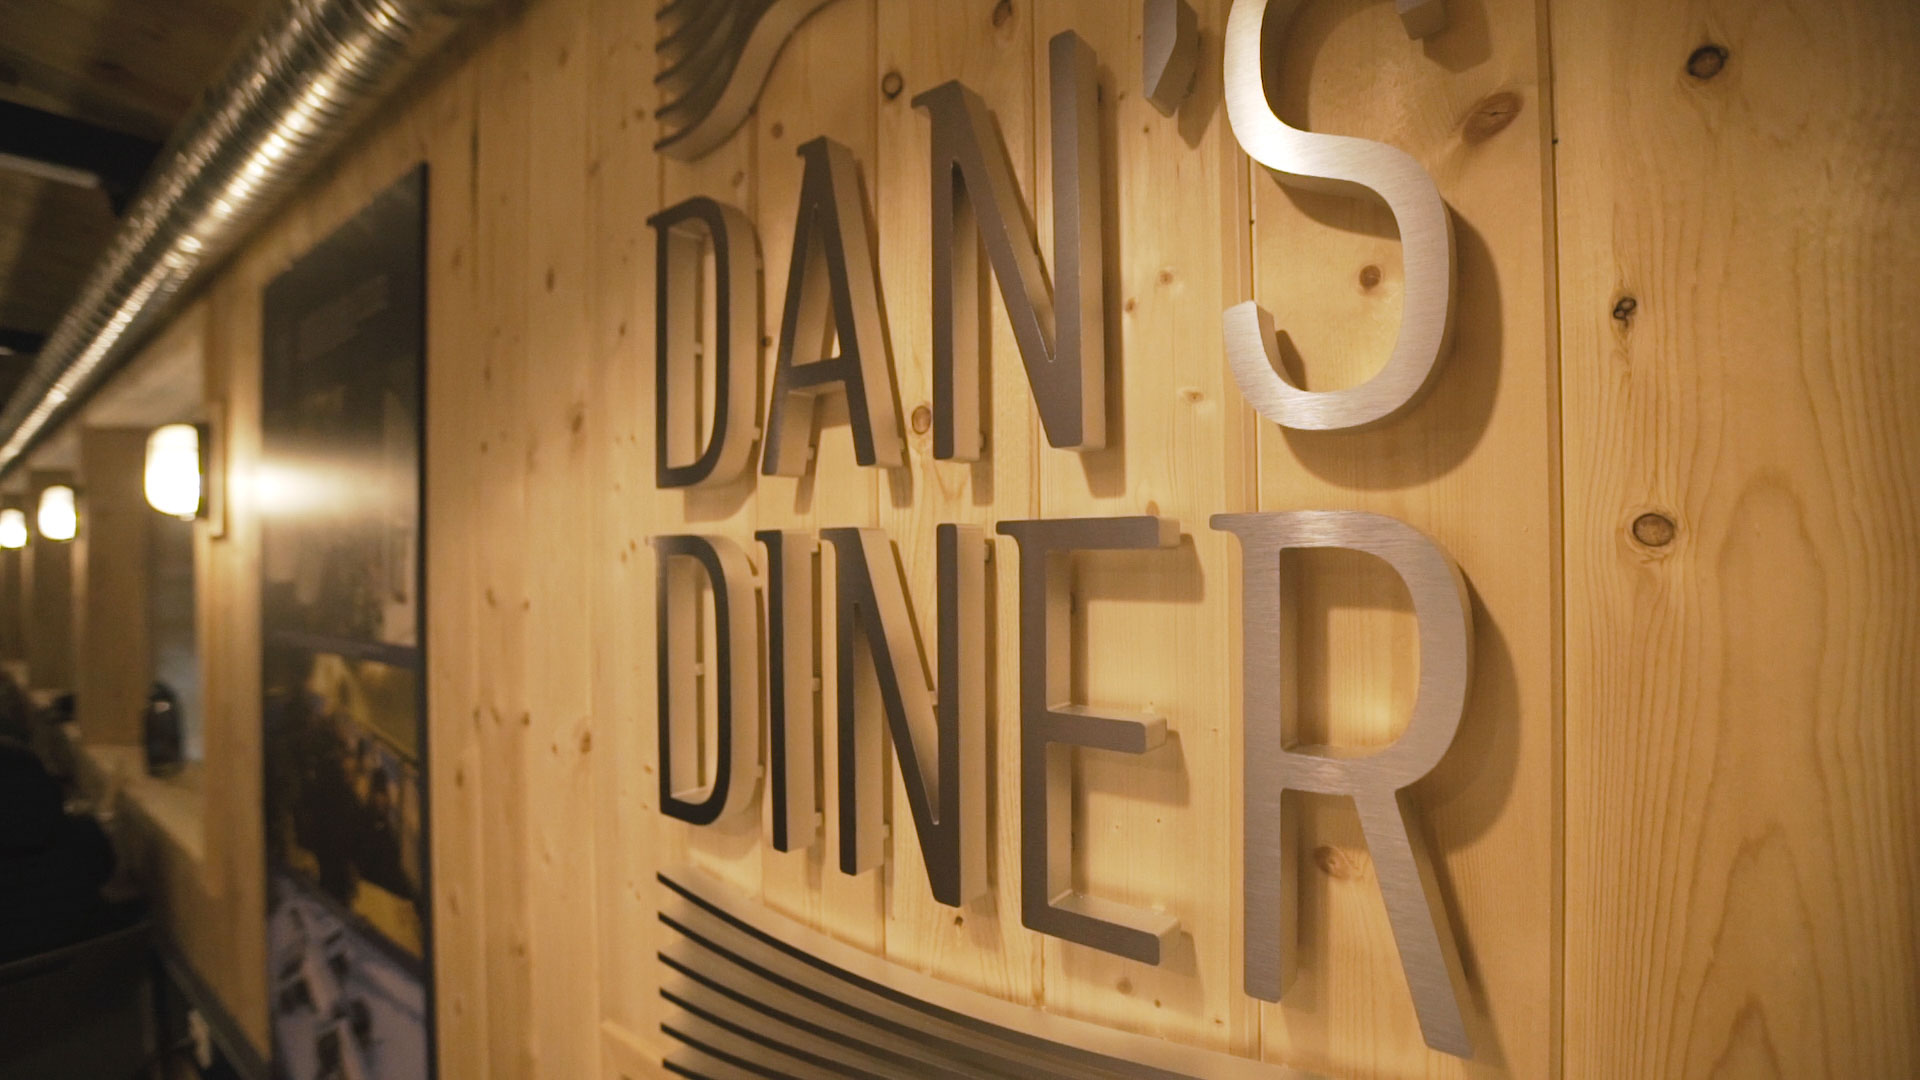 Watch the Dan’s Diner video